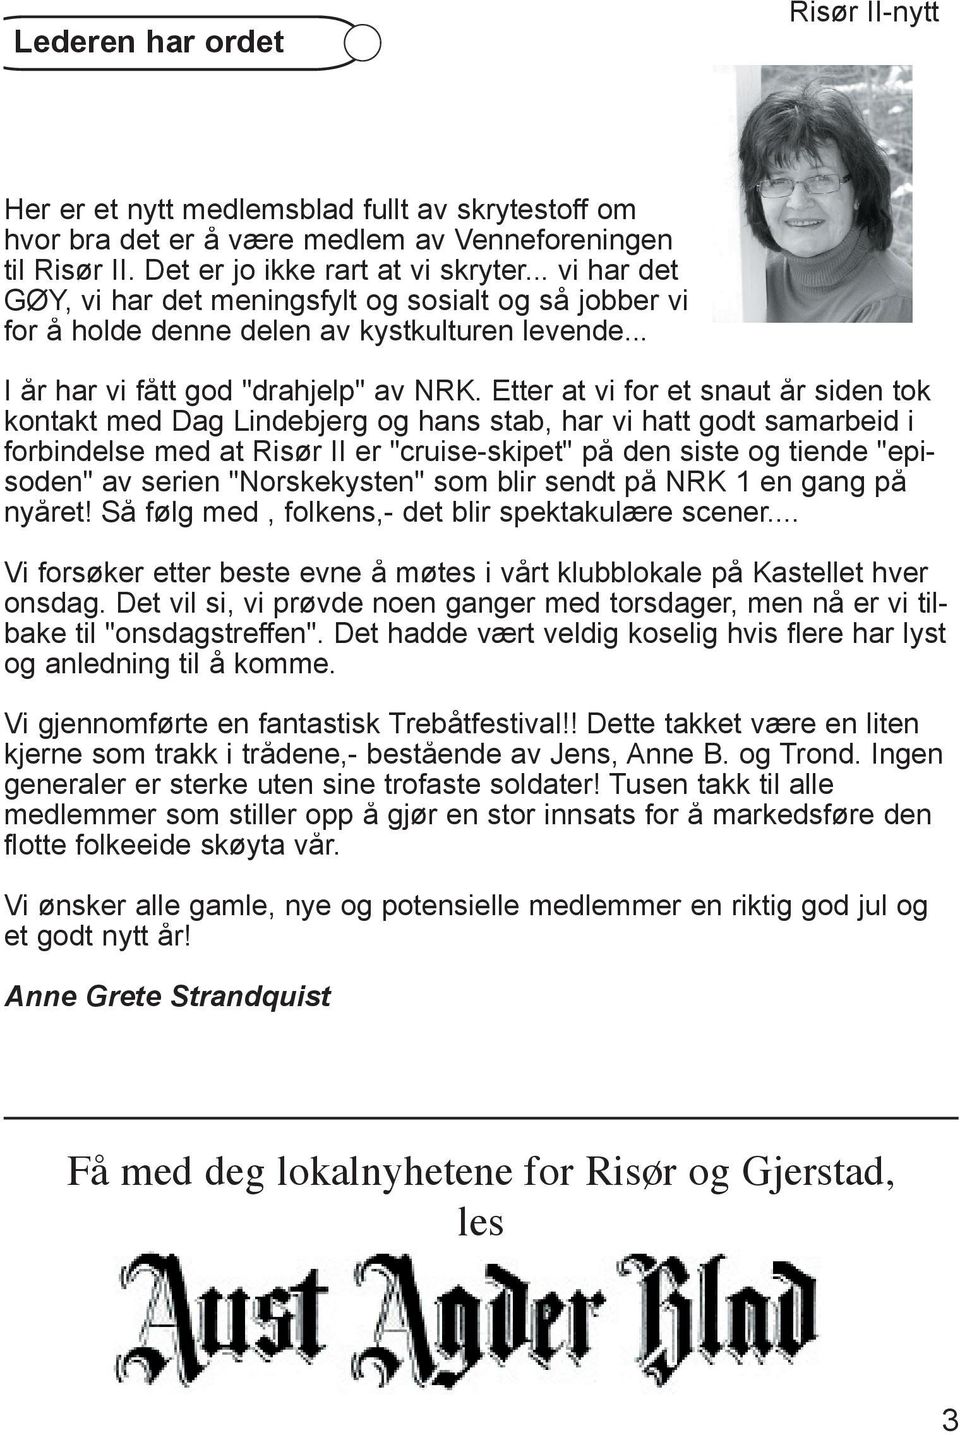 Etter at vi for et snaut år siden tok kontakt med Dag Lindebjerg og hans stab, har vi hatt godt samarbeid i forbindelse med at Risør II er "cruise-skipet" på den siste og tiende "episoden" av serien